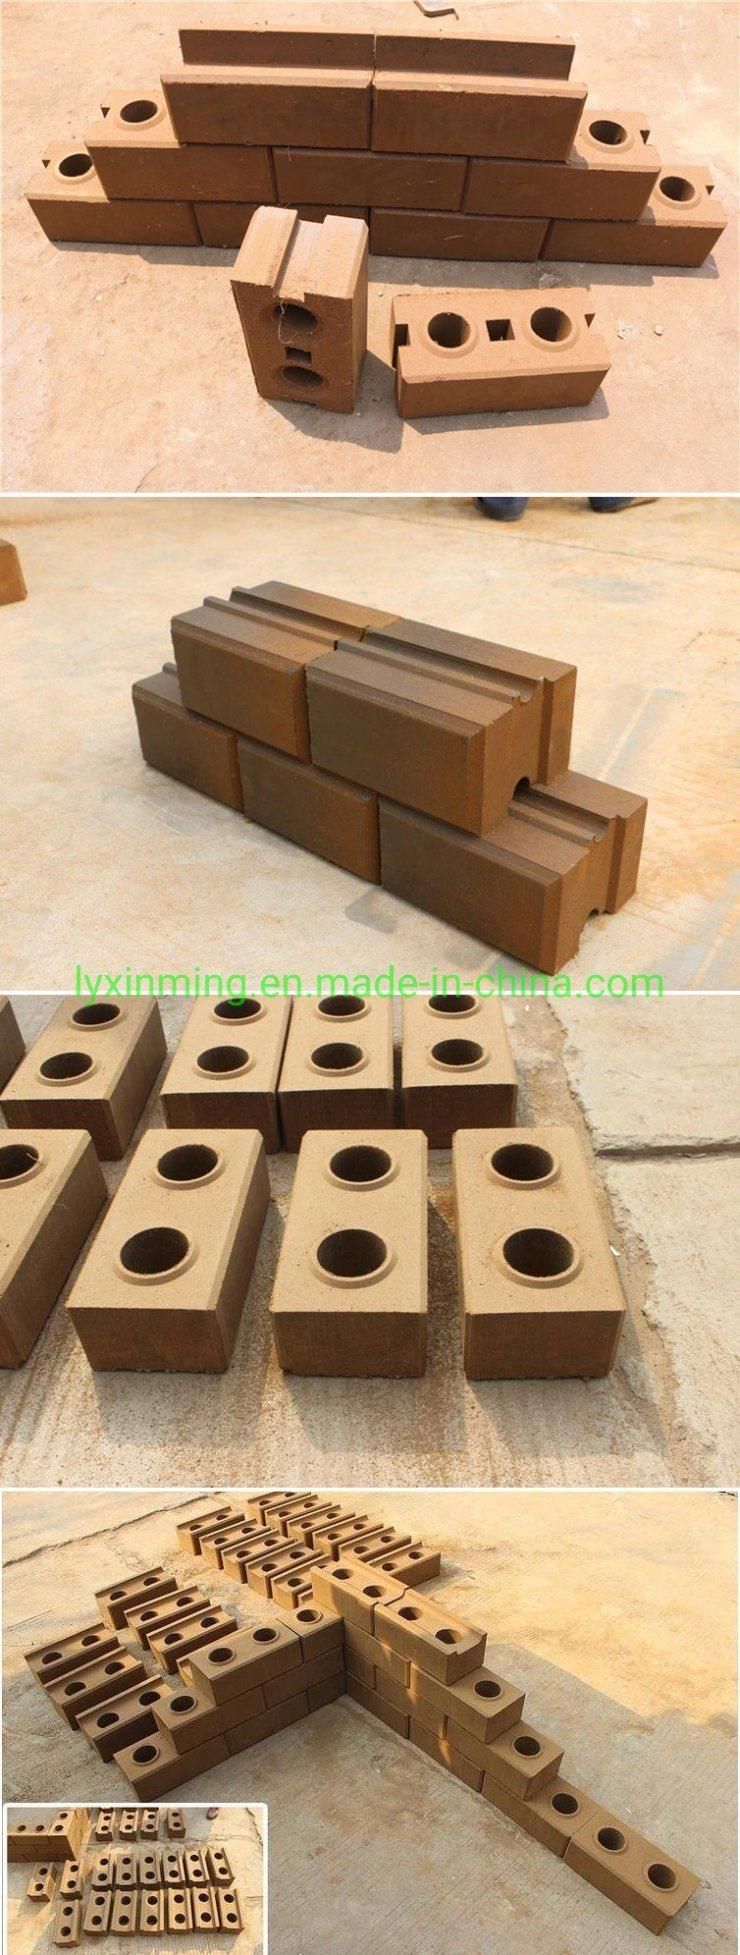 Xinming Xm2-25 Clay Interlocking Block Making Machine Brick Machine for House